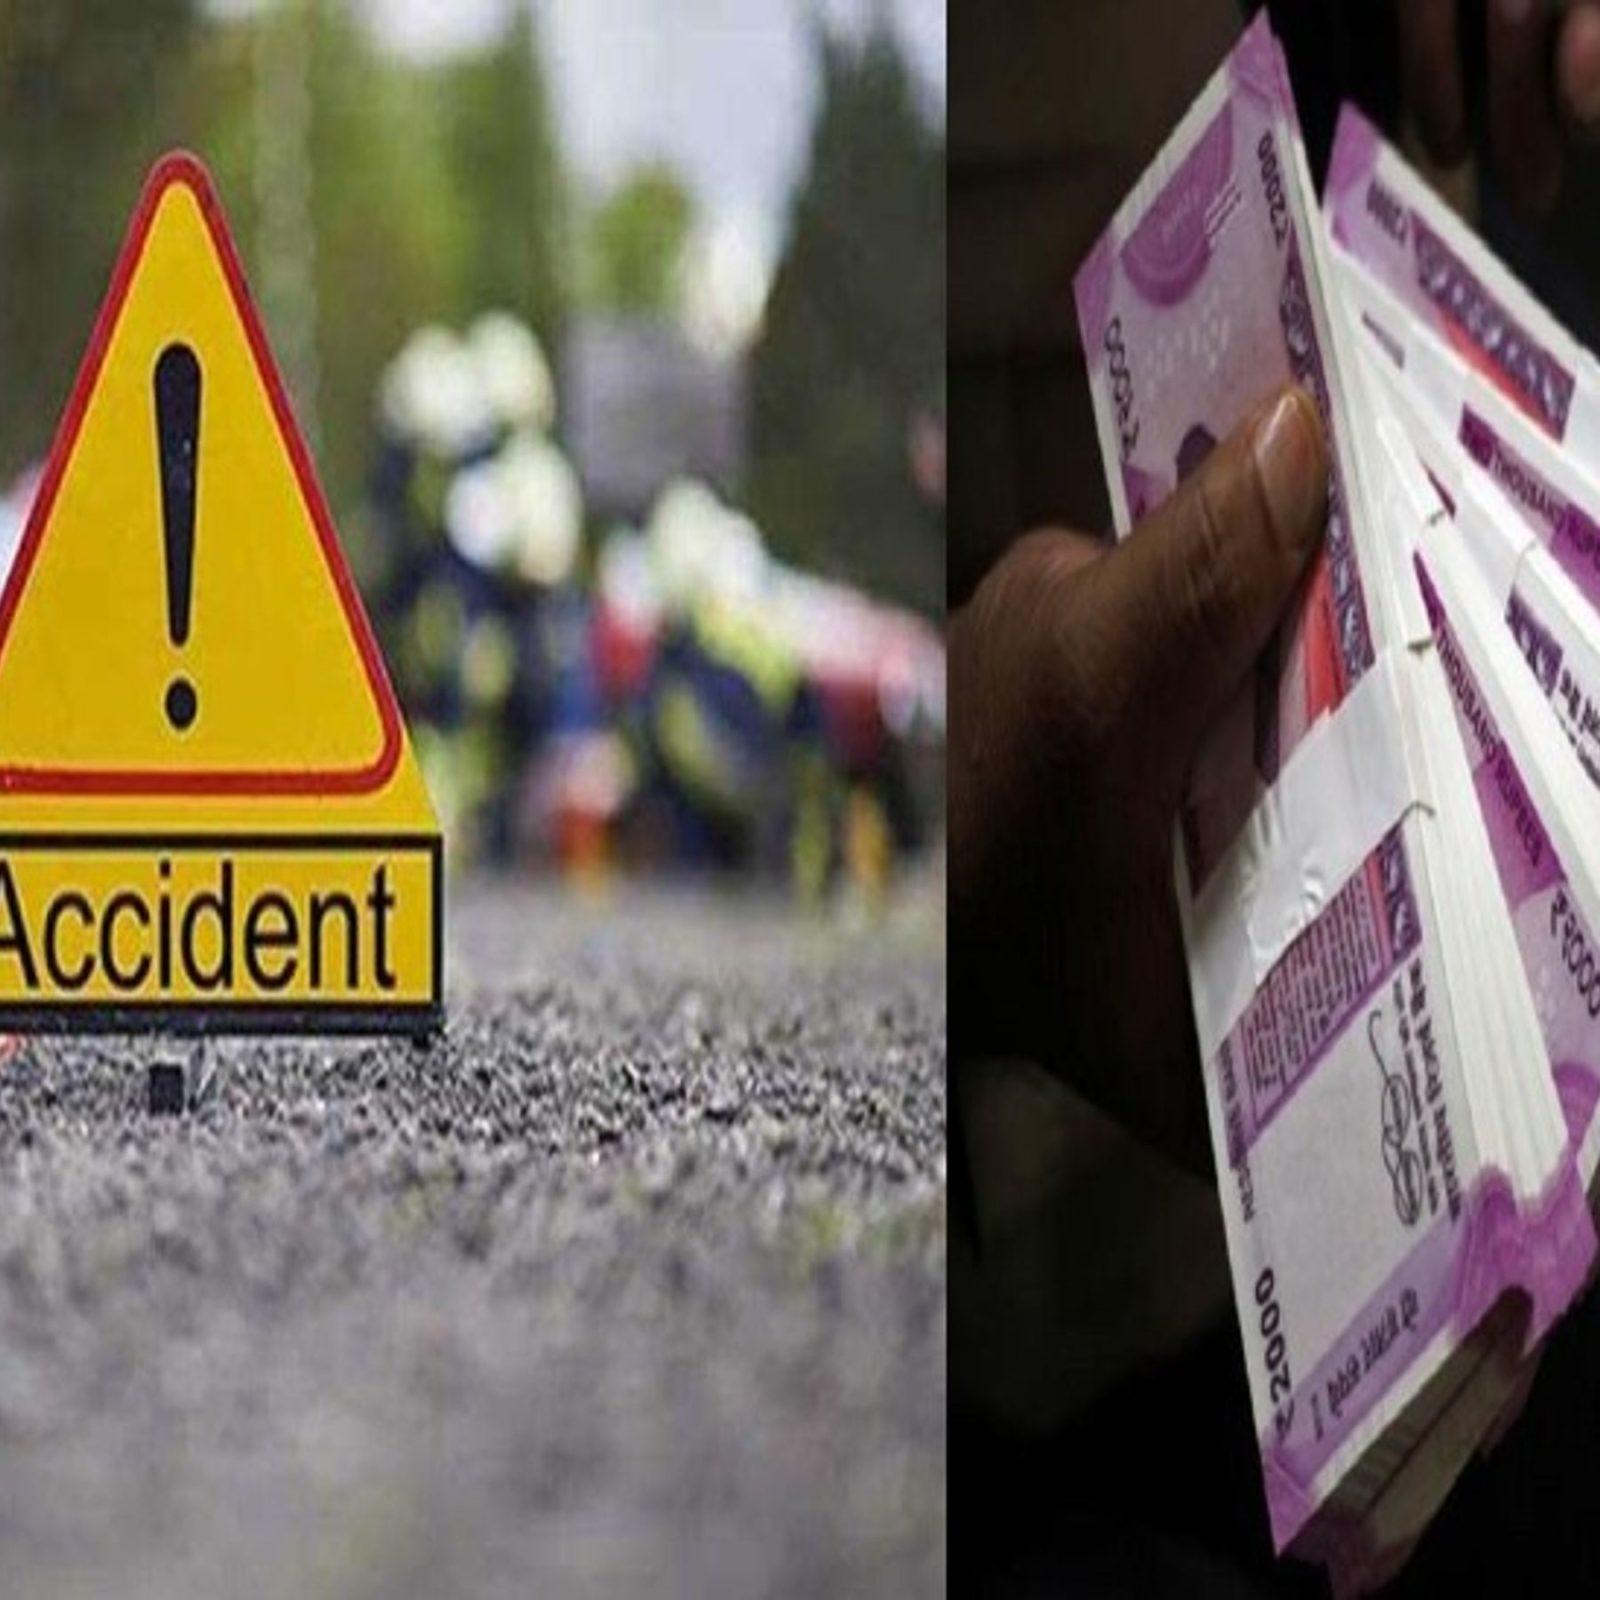 सड़क दुर्घटना से पीड़ित परिवारों को तत्काल मिलेगा 2 लाख रुपए का मुआवजा